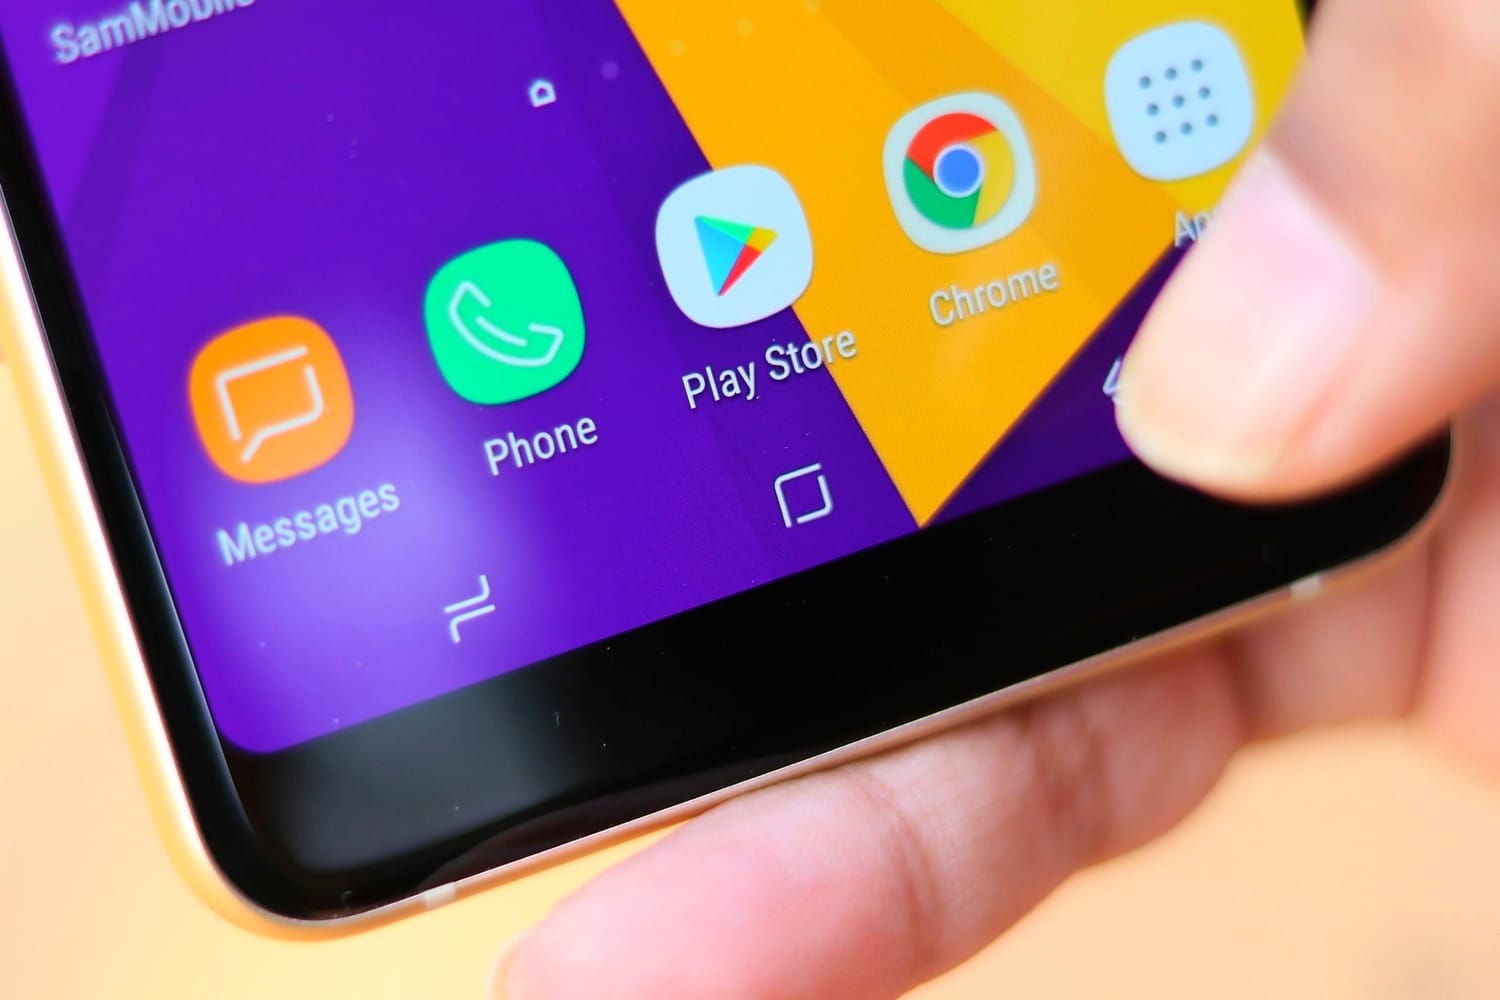 Galaxy J6 оснащен безрамочным экраном и работает на Android 8.0 Oreo